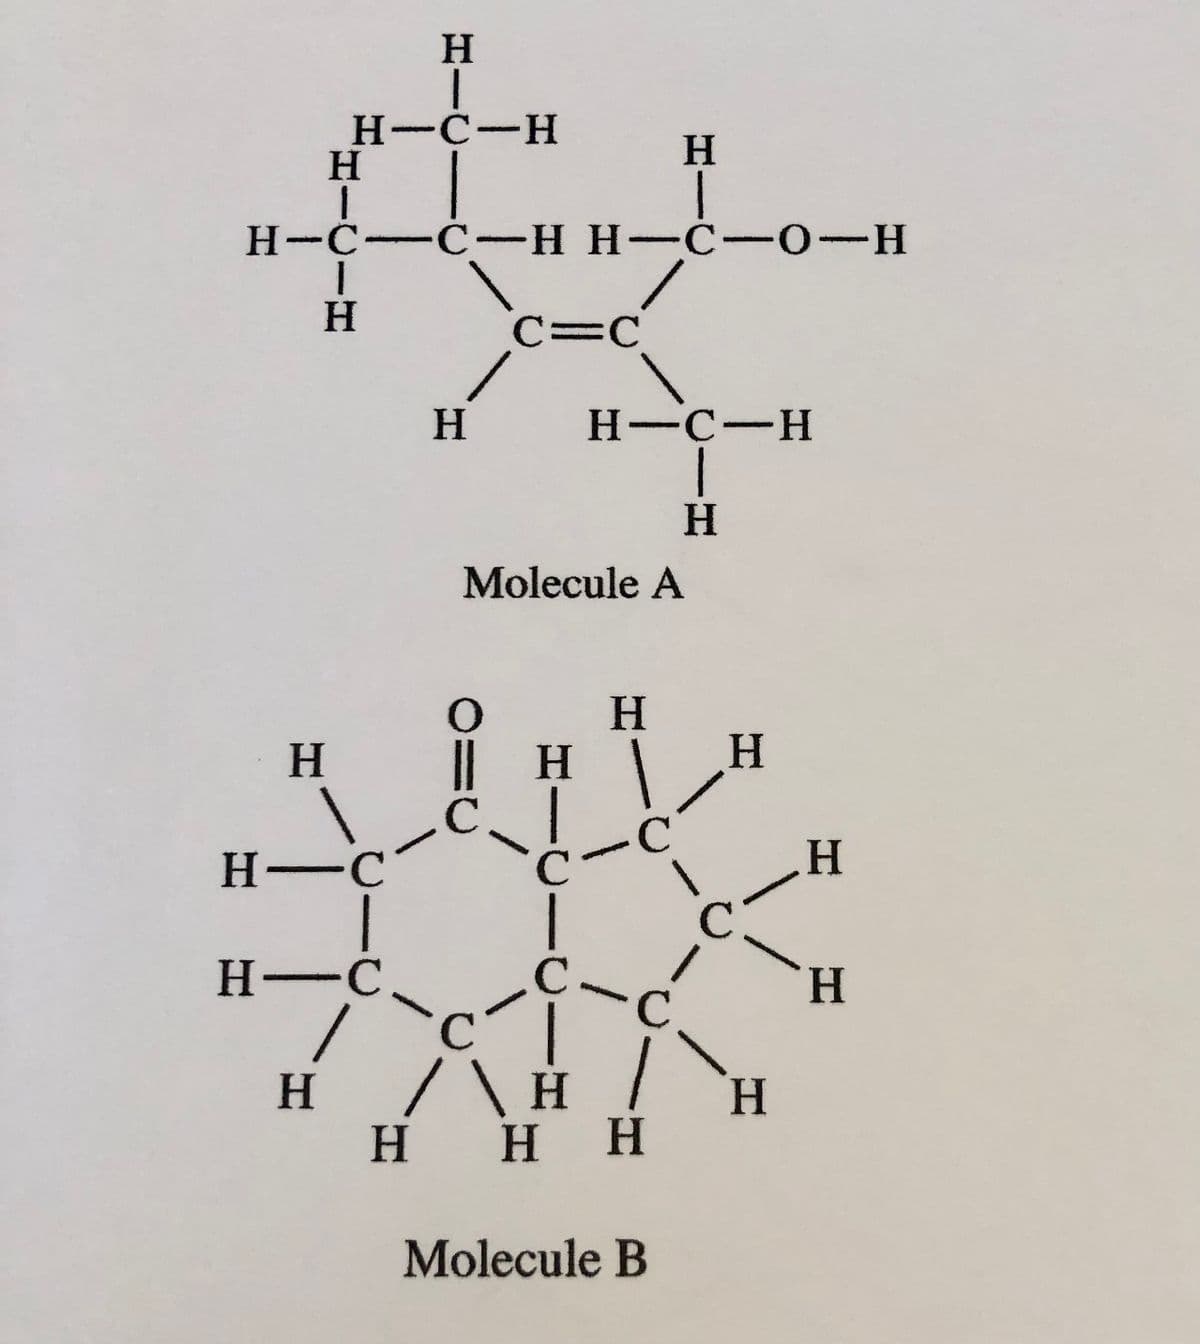 HHIC
Η
H-C-H
H
HIC
1
1
1
H
H-C-C-H H-C-0-H
H-C
H-C
/
H
H
C=C
0
с
Molecule A
HIC
H
H-C-H
H
H
H
C
с
с
/ \ H
/\ H /
H H H
"
C
Molecule B
H
C
H
H
H